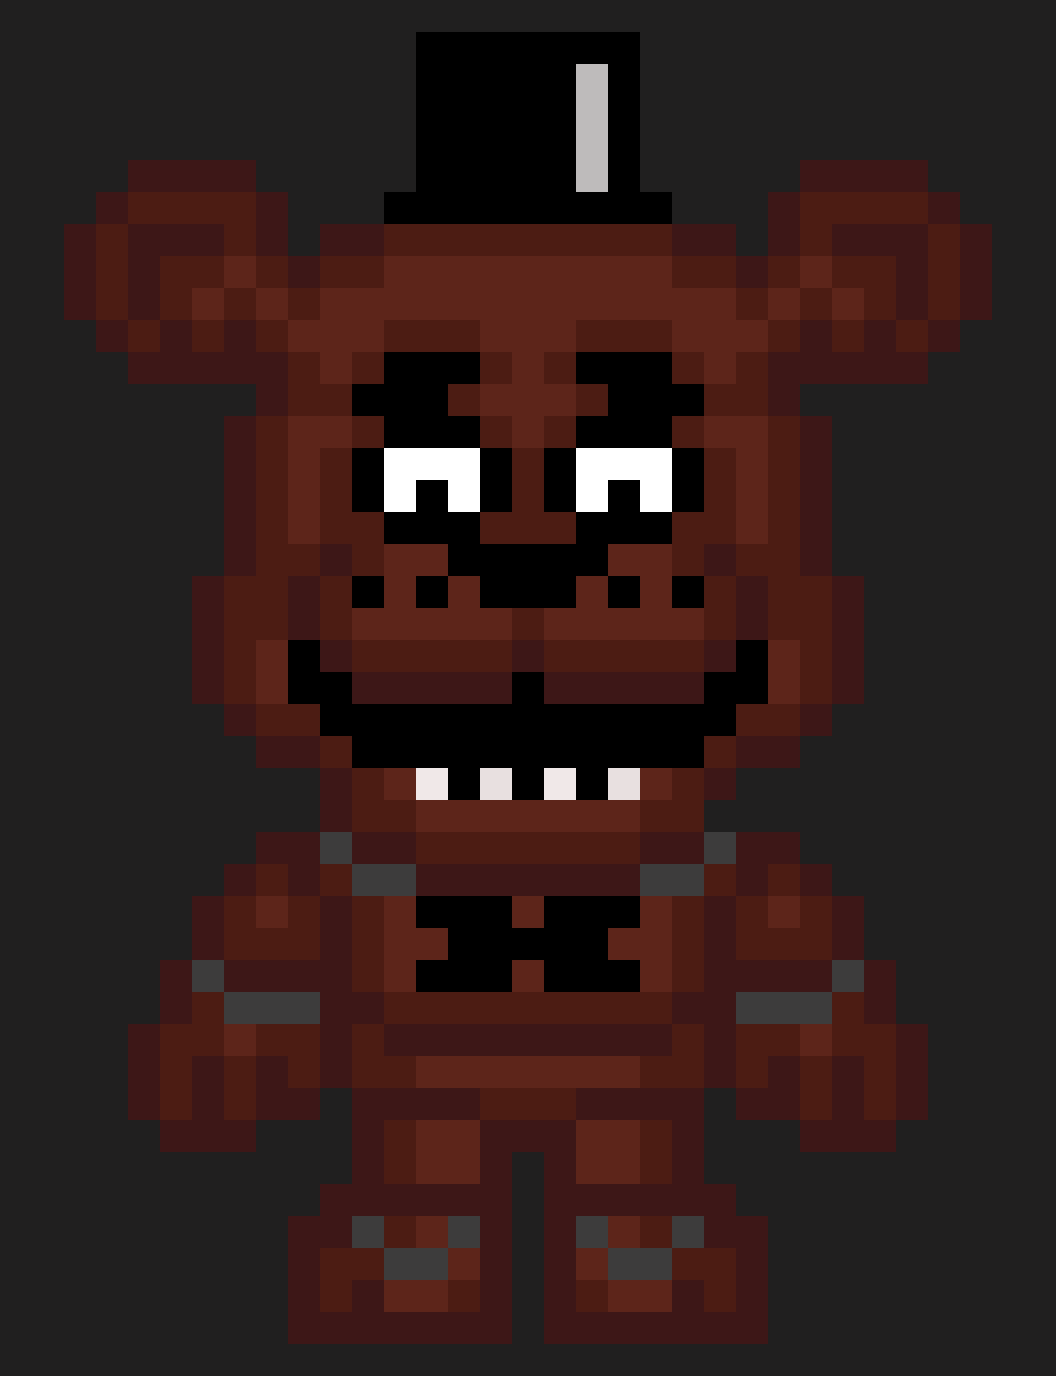 Freddy fazbear pixel art